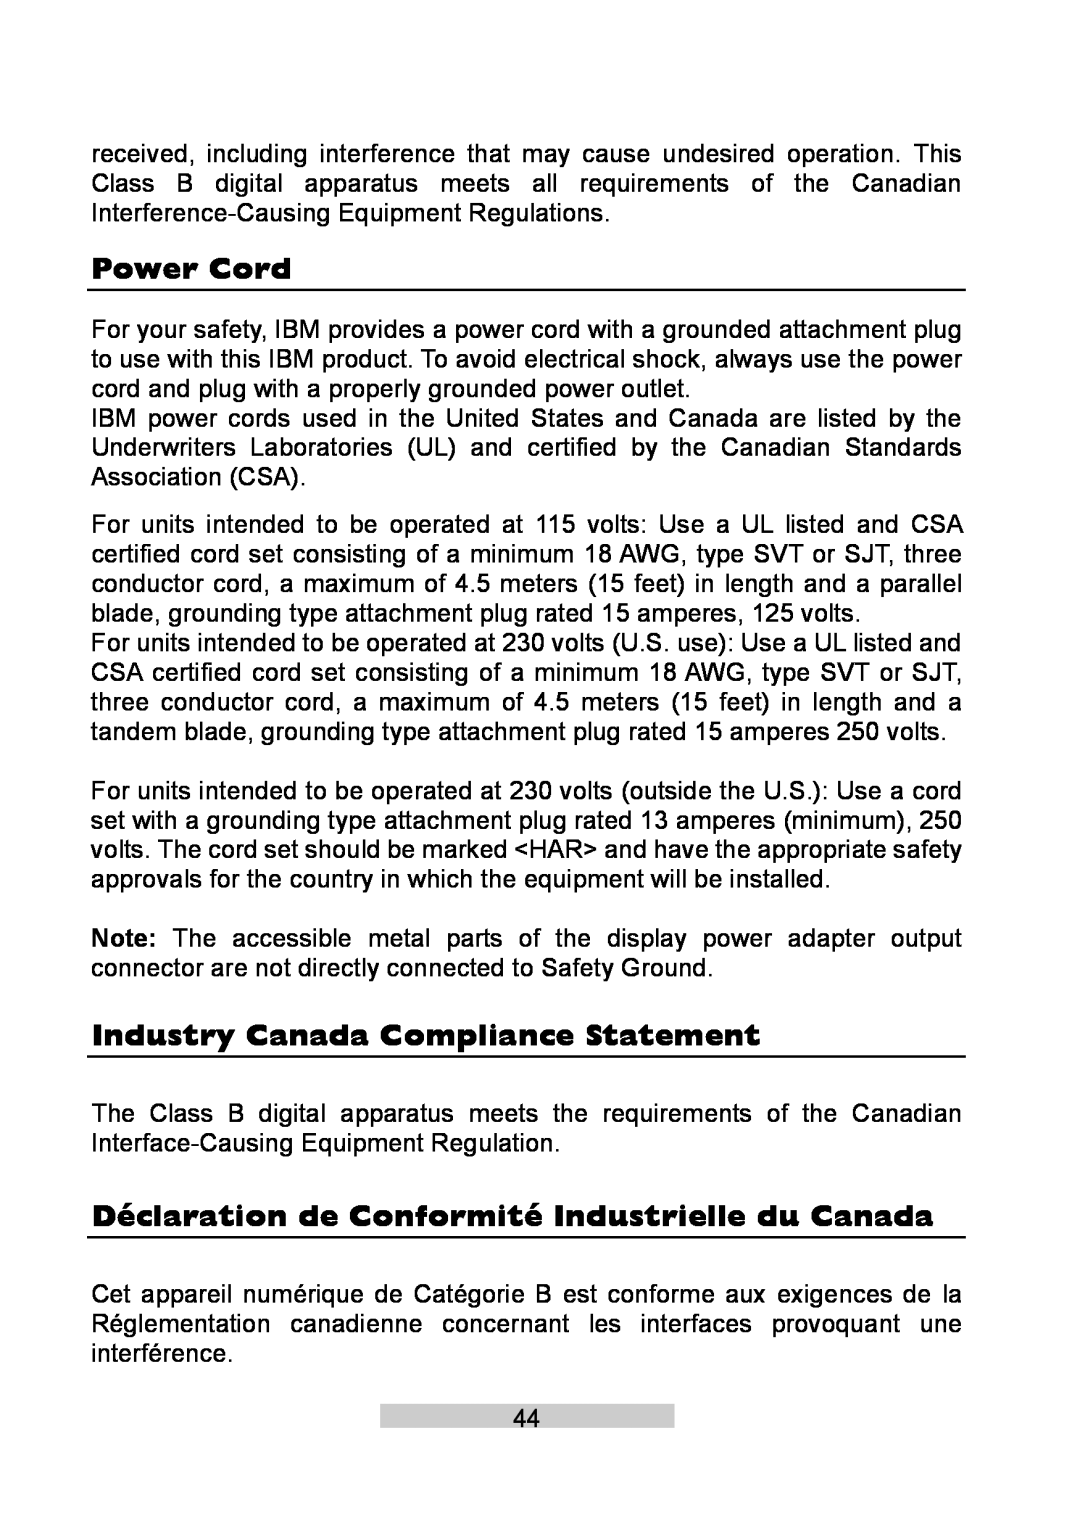 IBM T86A system manual Power Cord, Industry Canada Compliance Statement, Déclaration de Conformité Industrielle du Canada 